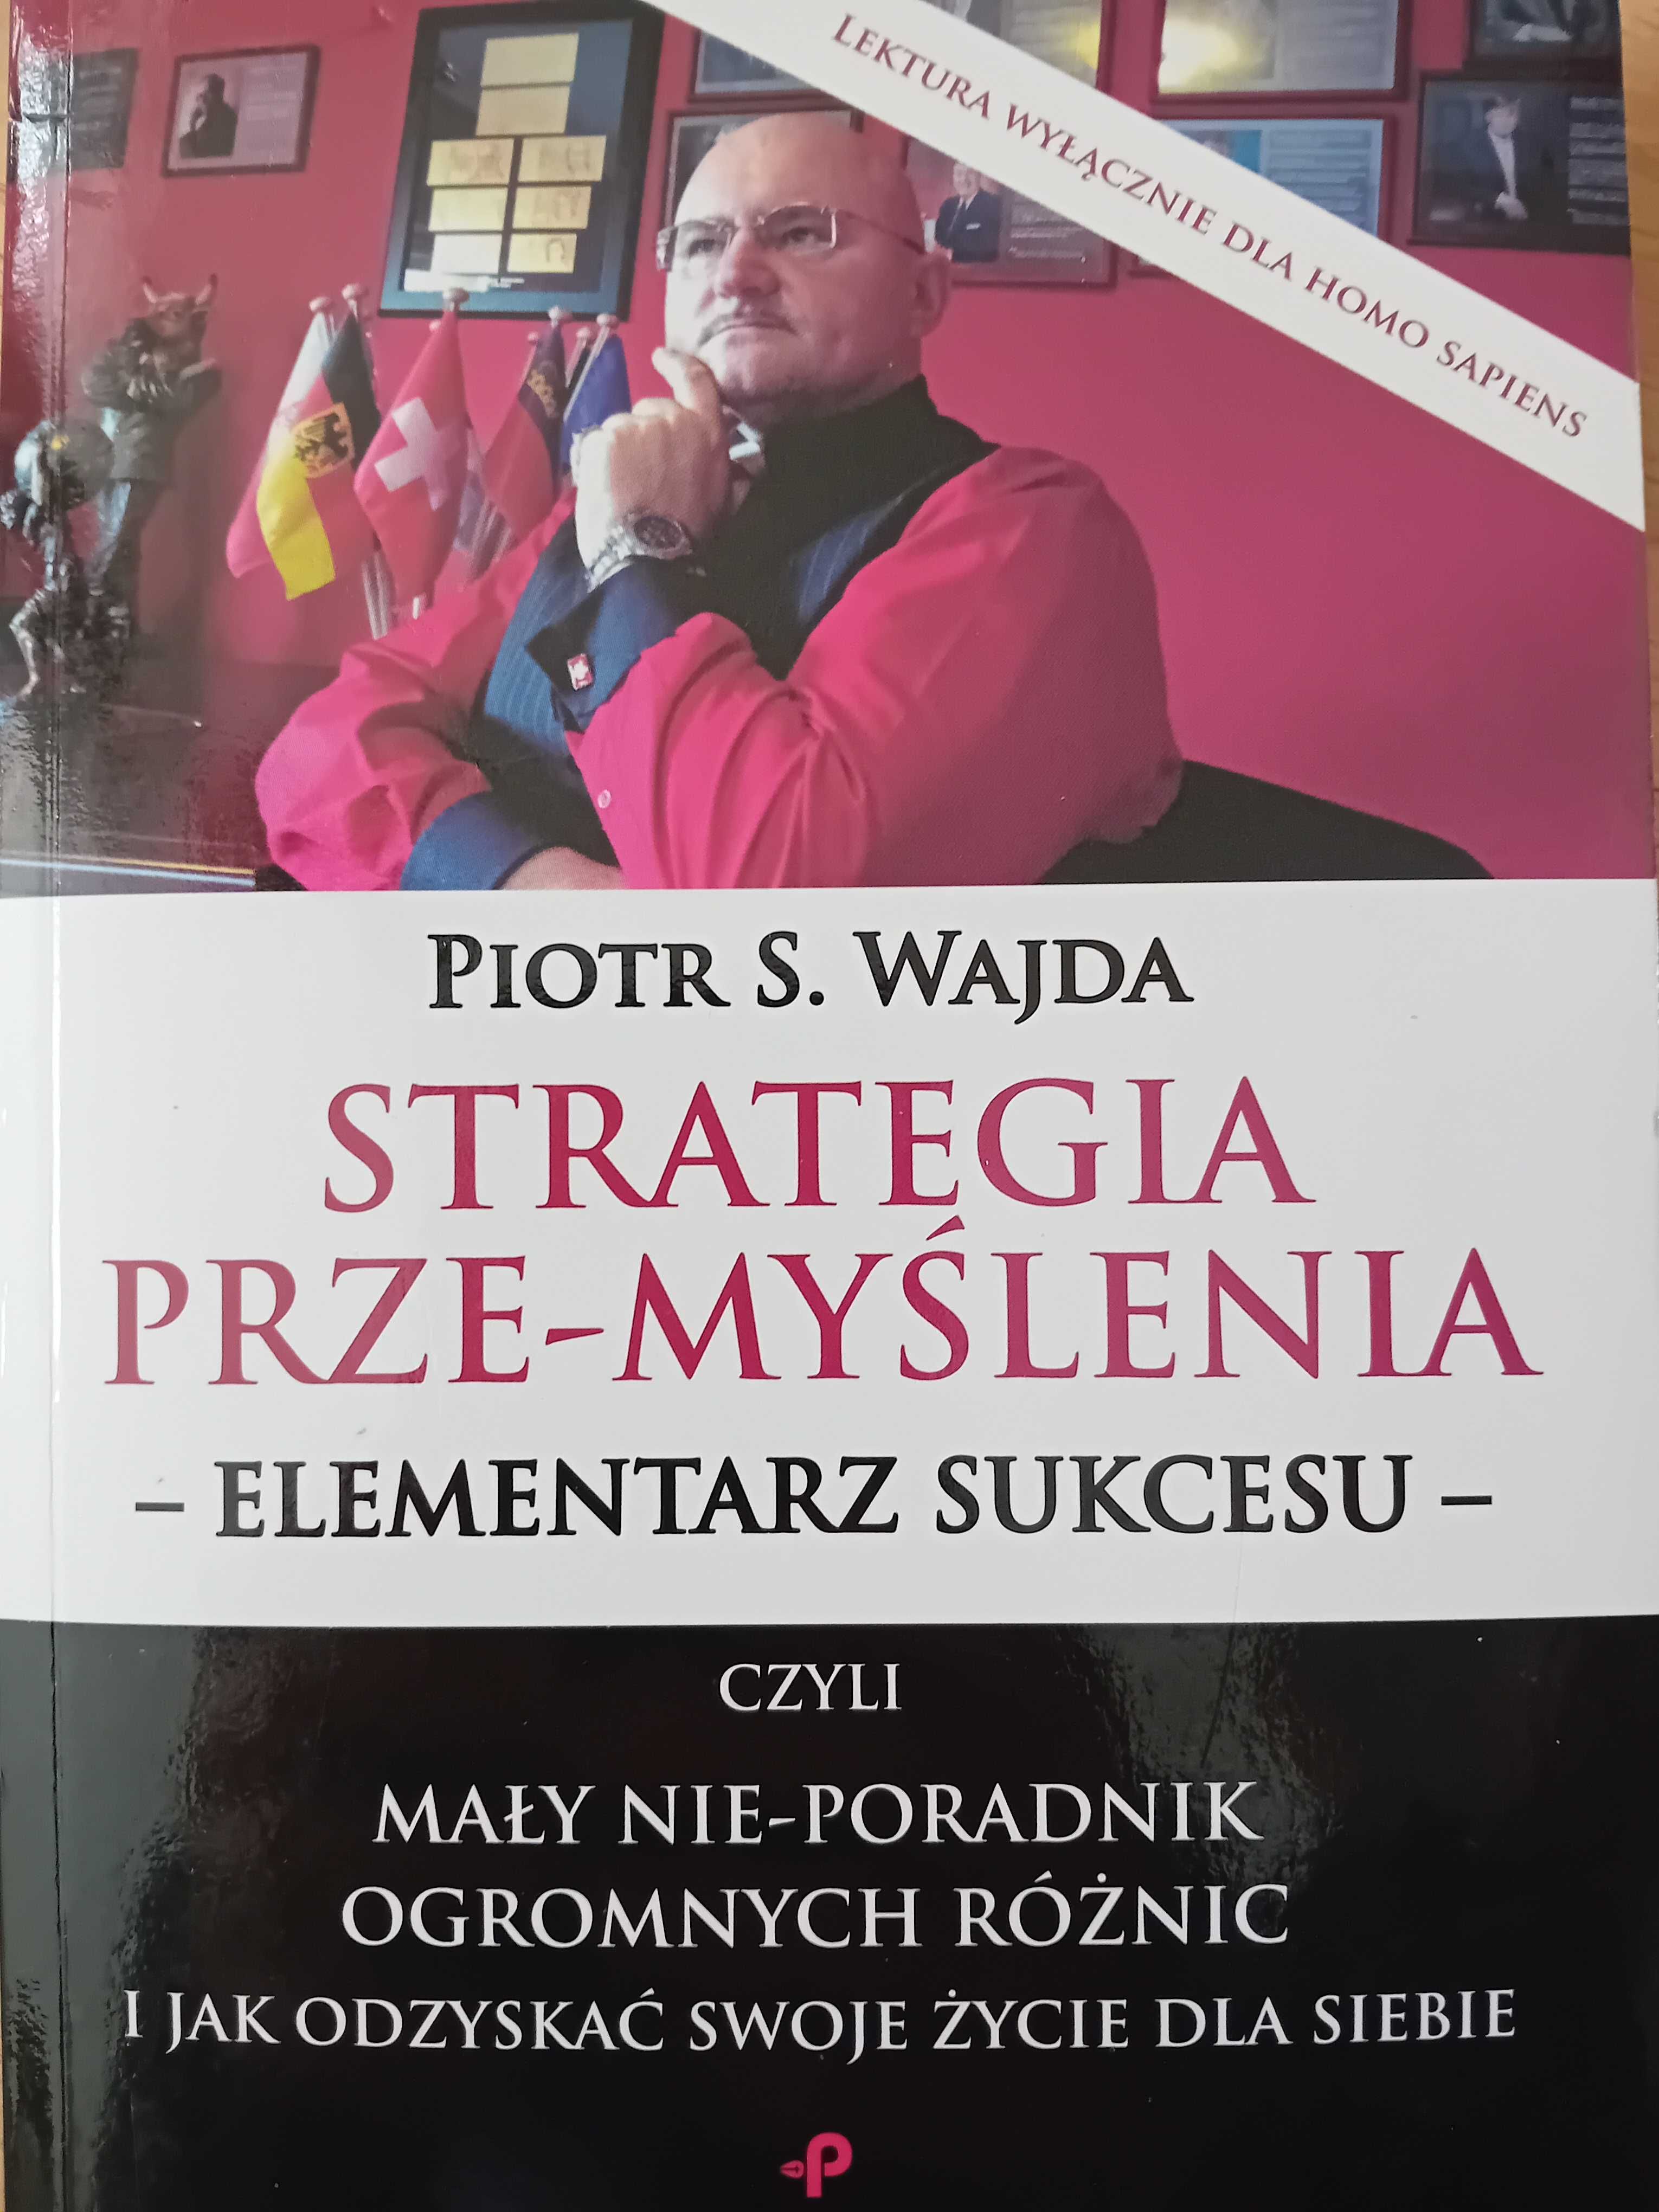 Piotr S.Wajda "Strategia prze-myślenia" - elementarz sukcesu